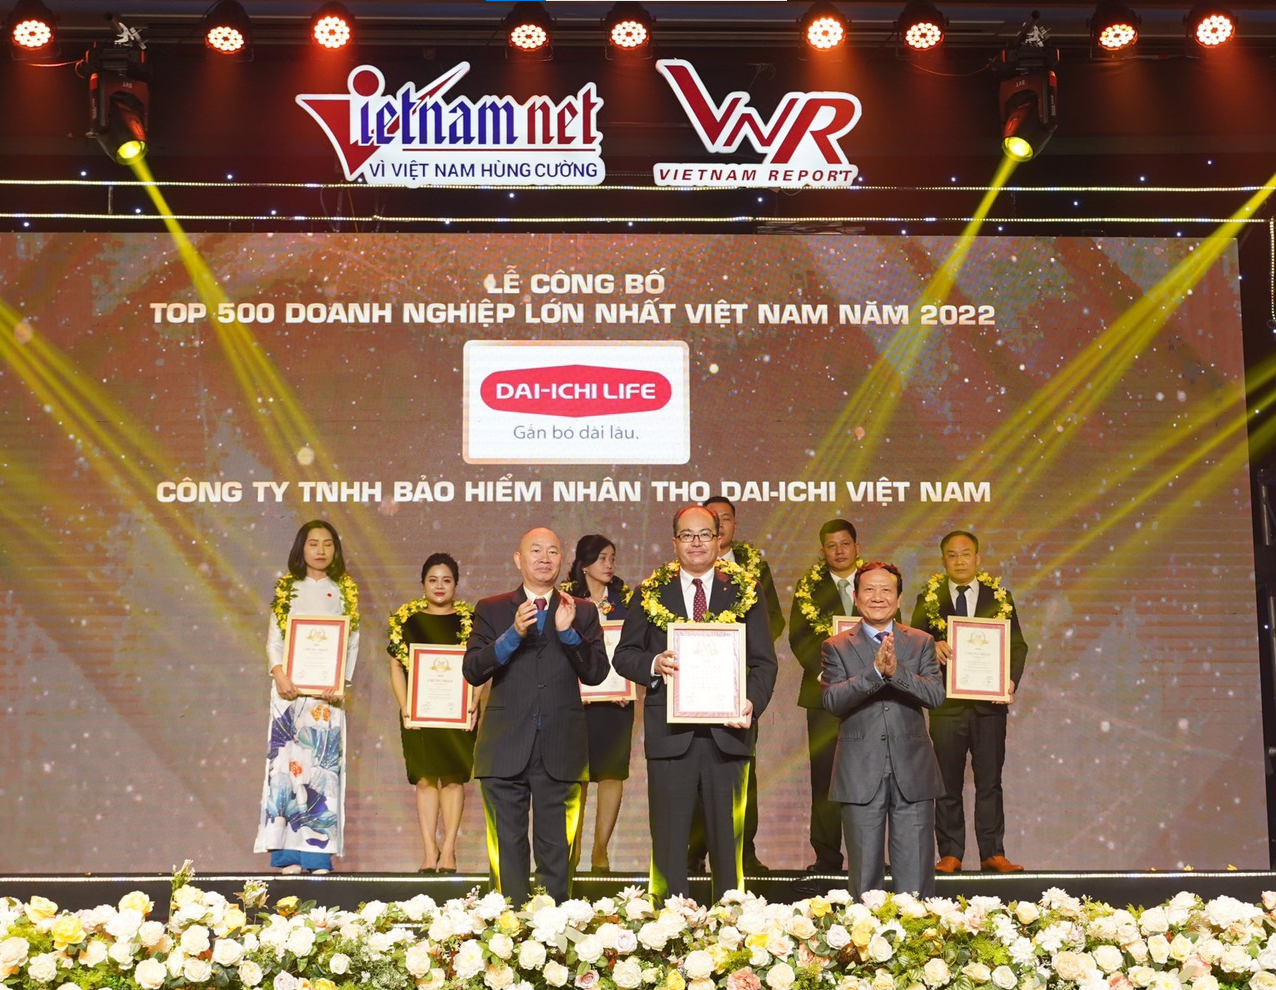 Dai-ichi Life Việt Nam xuất sắc vươn lên vị trí thứ 70 trong Top 500 Doanh nghiệp lớn nhất Việt Nam năm 2022...